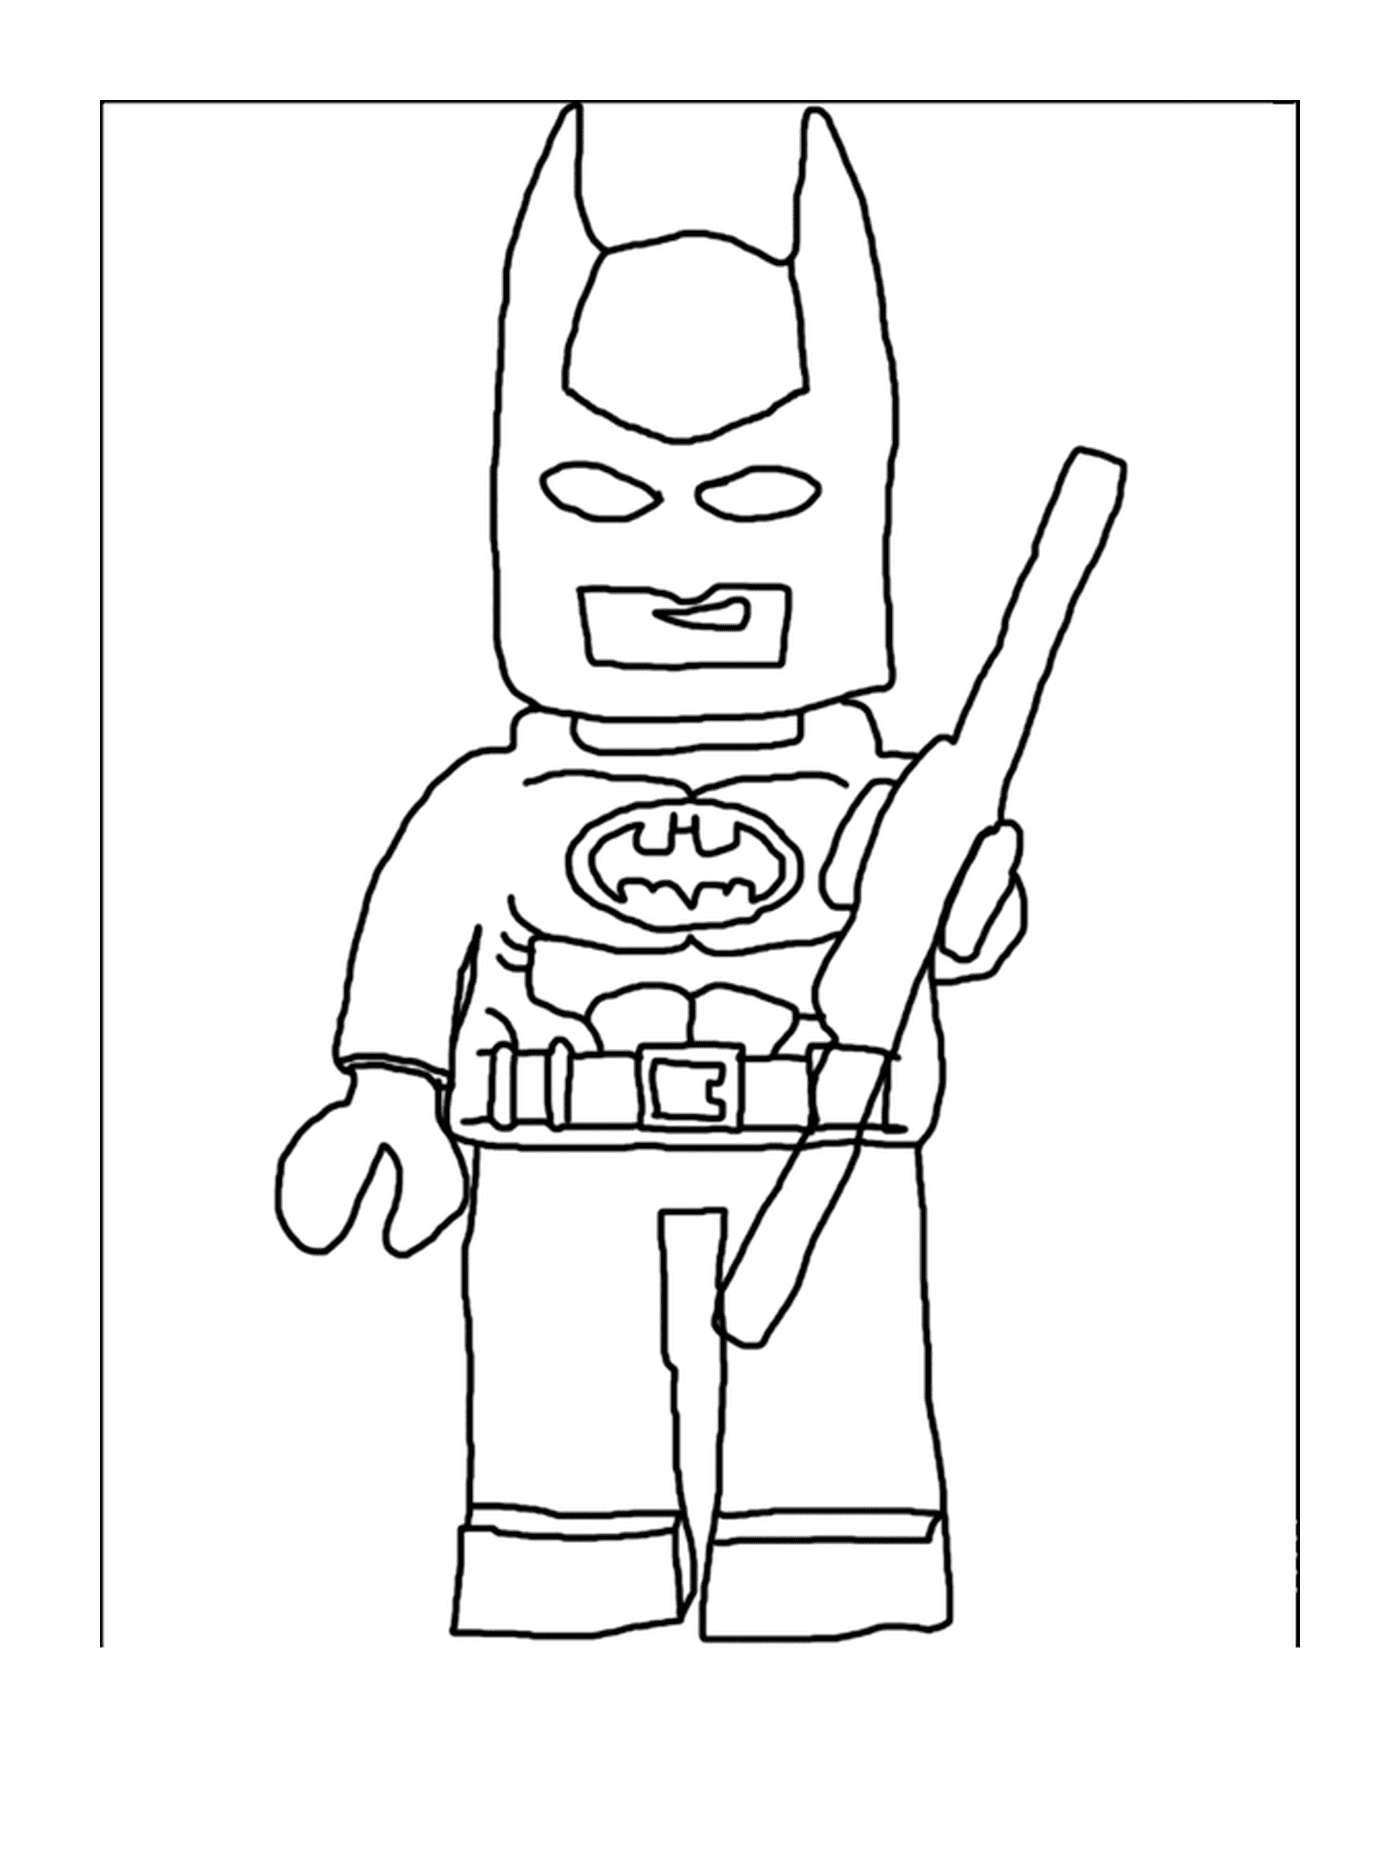  Batman Lego da frente 